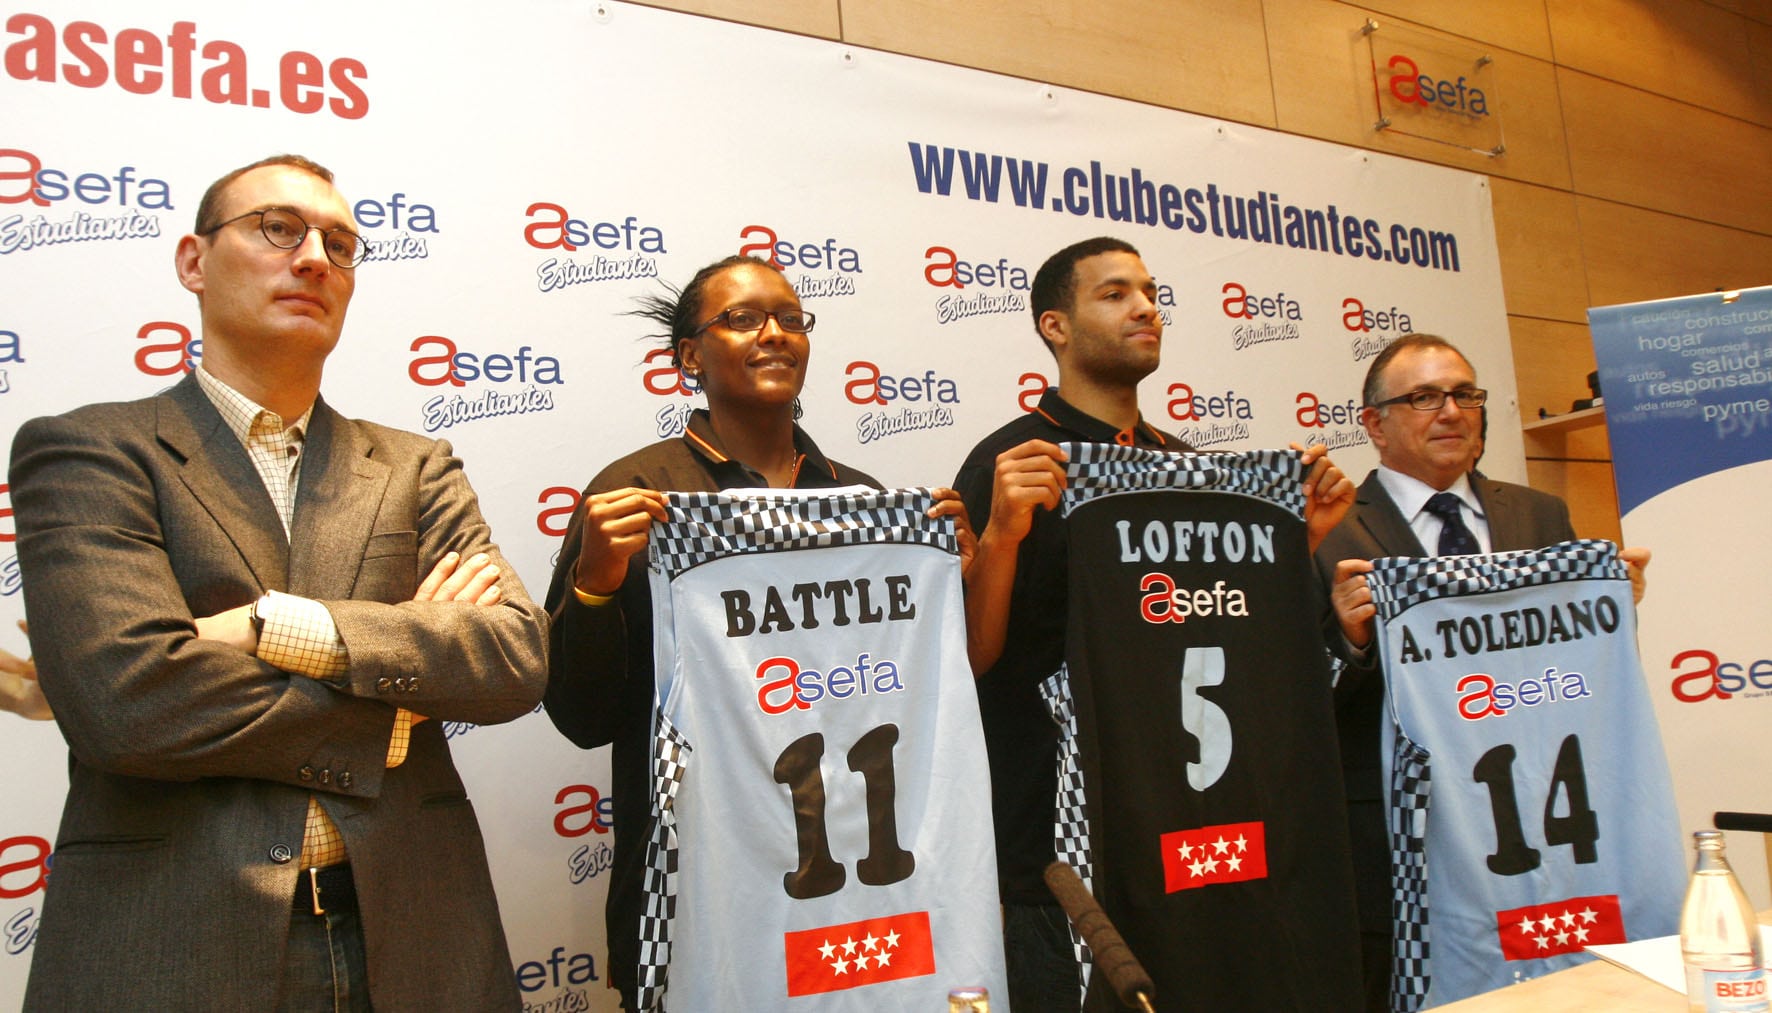 Doble presentación en la sede de Asefa: Battle para LF, Lofton para ACB